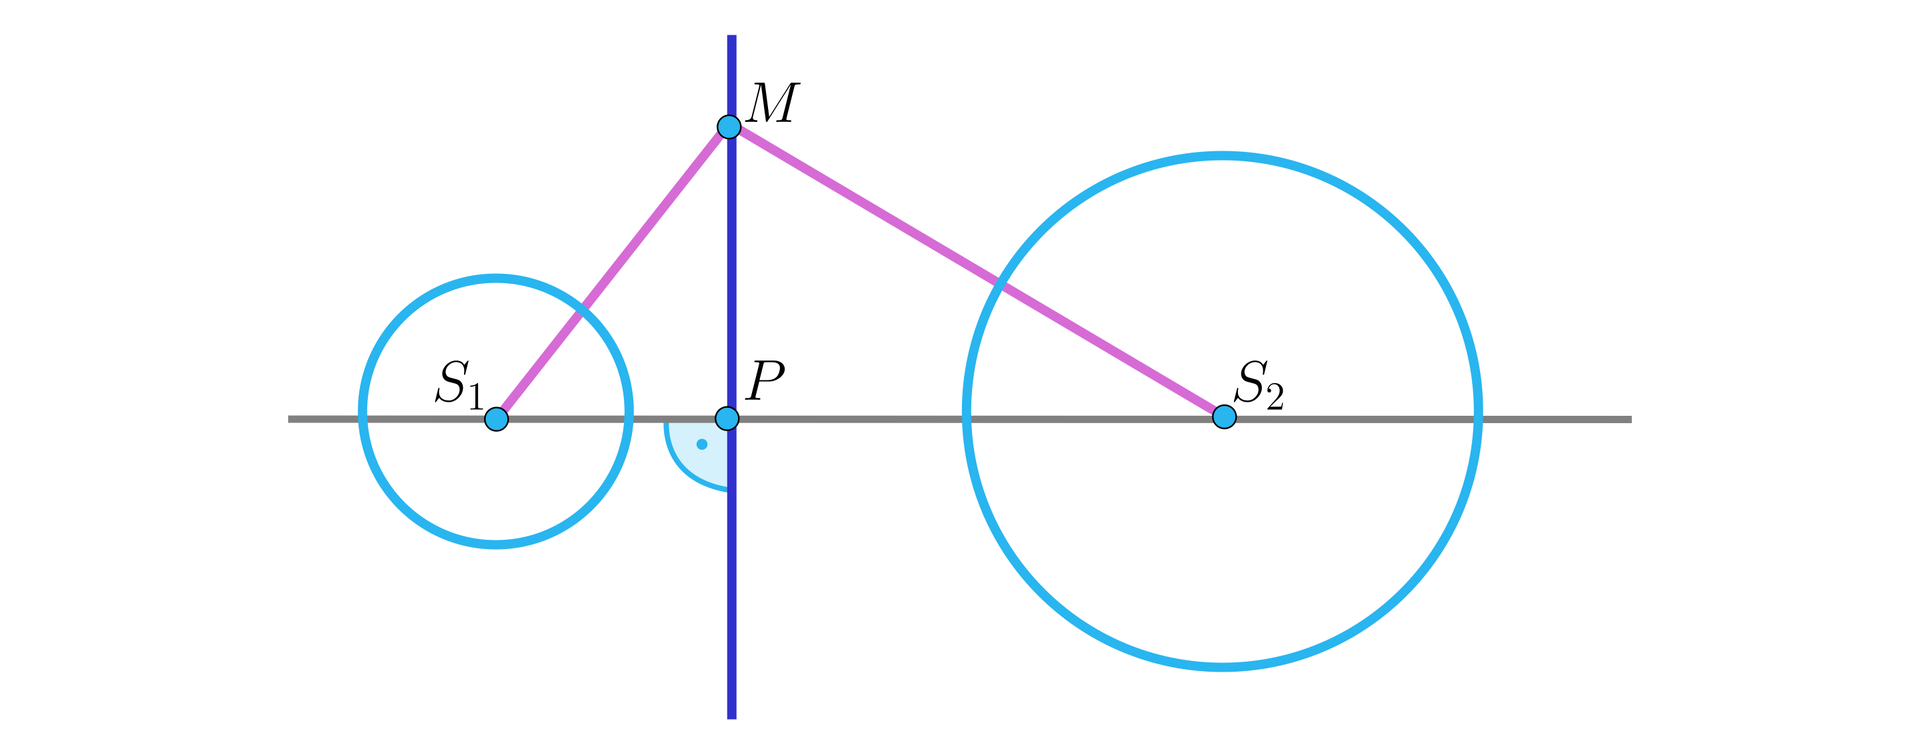 Na ilustracji przedstawiono dwa okręgi, o środkach w punktach S1 i S2. Przez środki okręgów przechodzi prostą L, na której zaznaczono punkt P znajdujący się między okręgami. Zaznaczono punkt M, leżący na prostej prostopadłej do prostej L, przechodzący przez punkt P. Kolorem różowym zaznaczono odcinek MS1, oraz MS2.